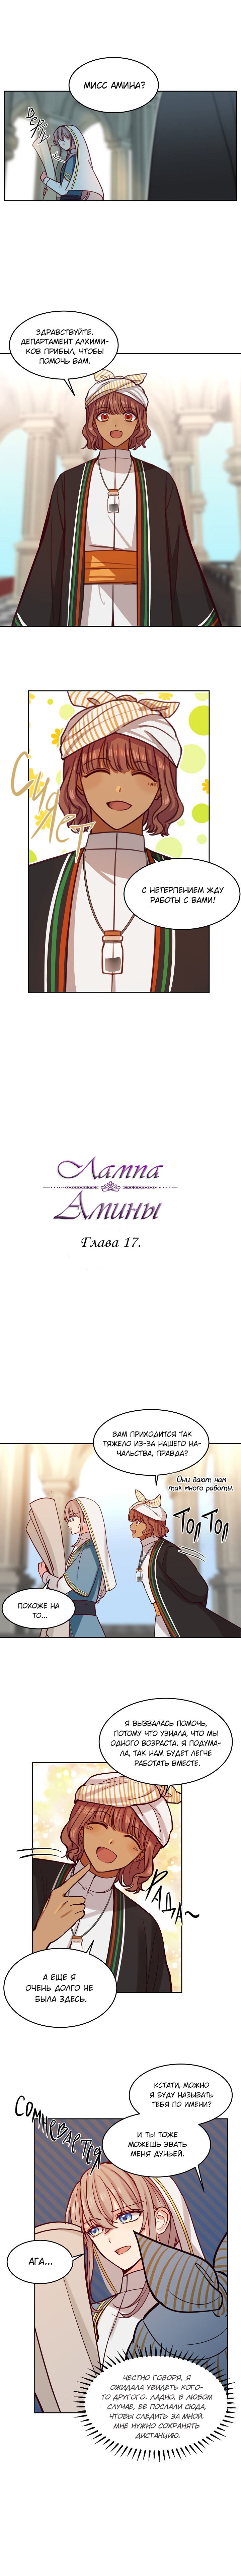 Амина из Лампы 1 - 17